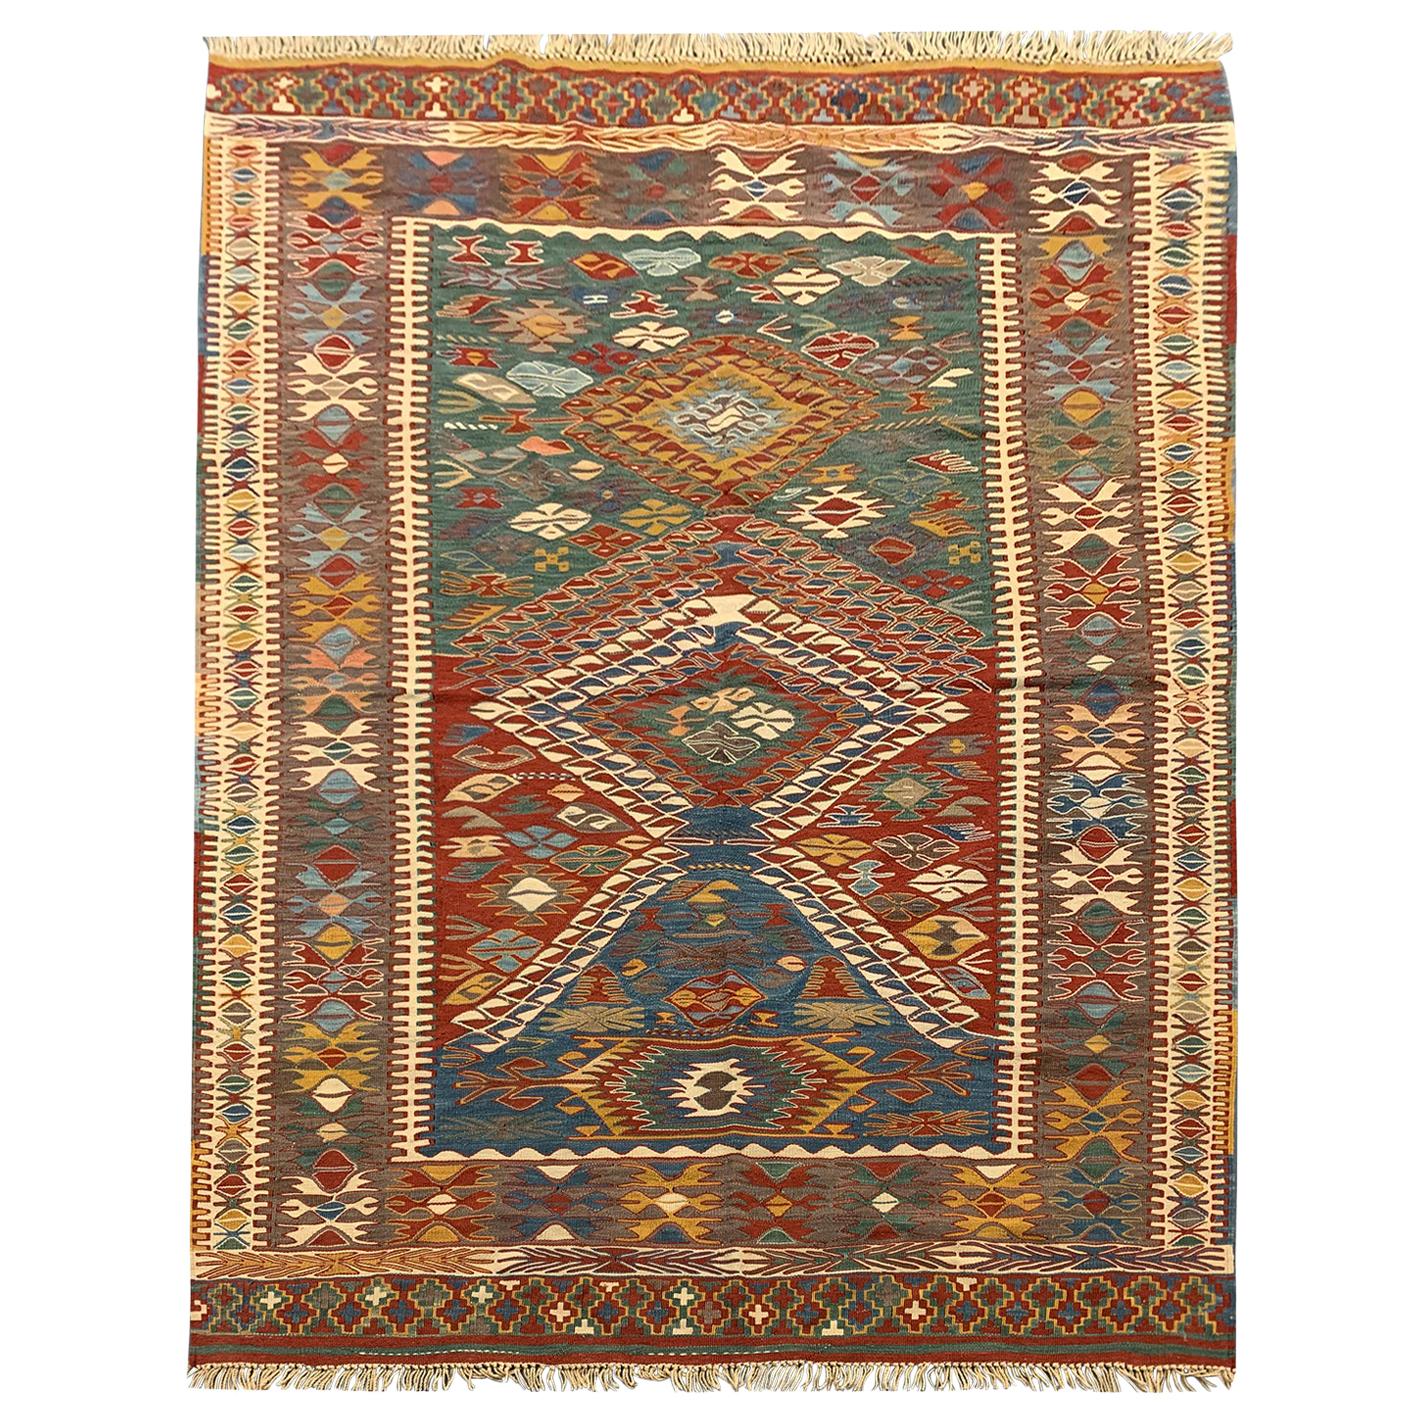 Handgefertigter antiker türkischer Kelims-Teppich, orientalischer Flachgewebe-Teppich